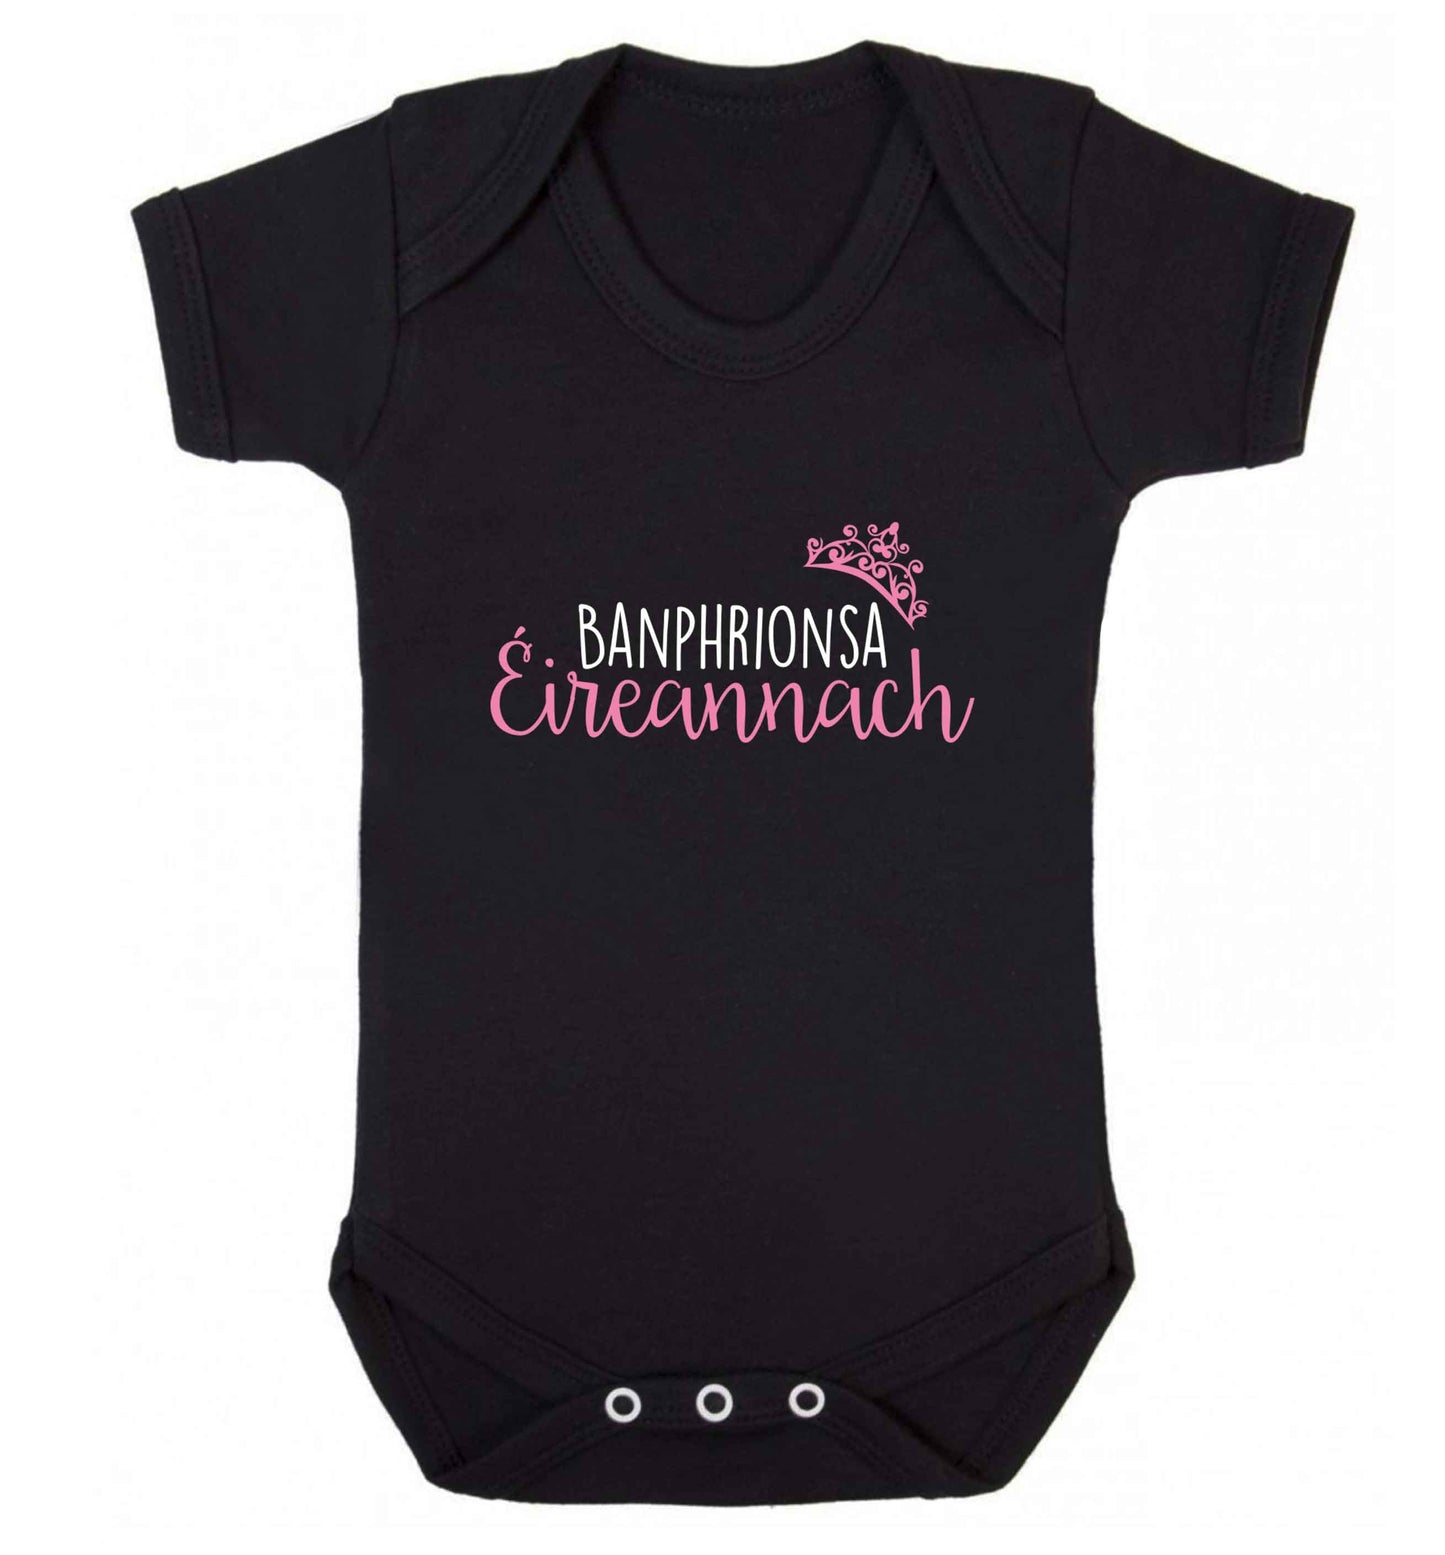 Banphrionsa eireannach baby vest black 18-24 months